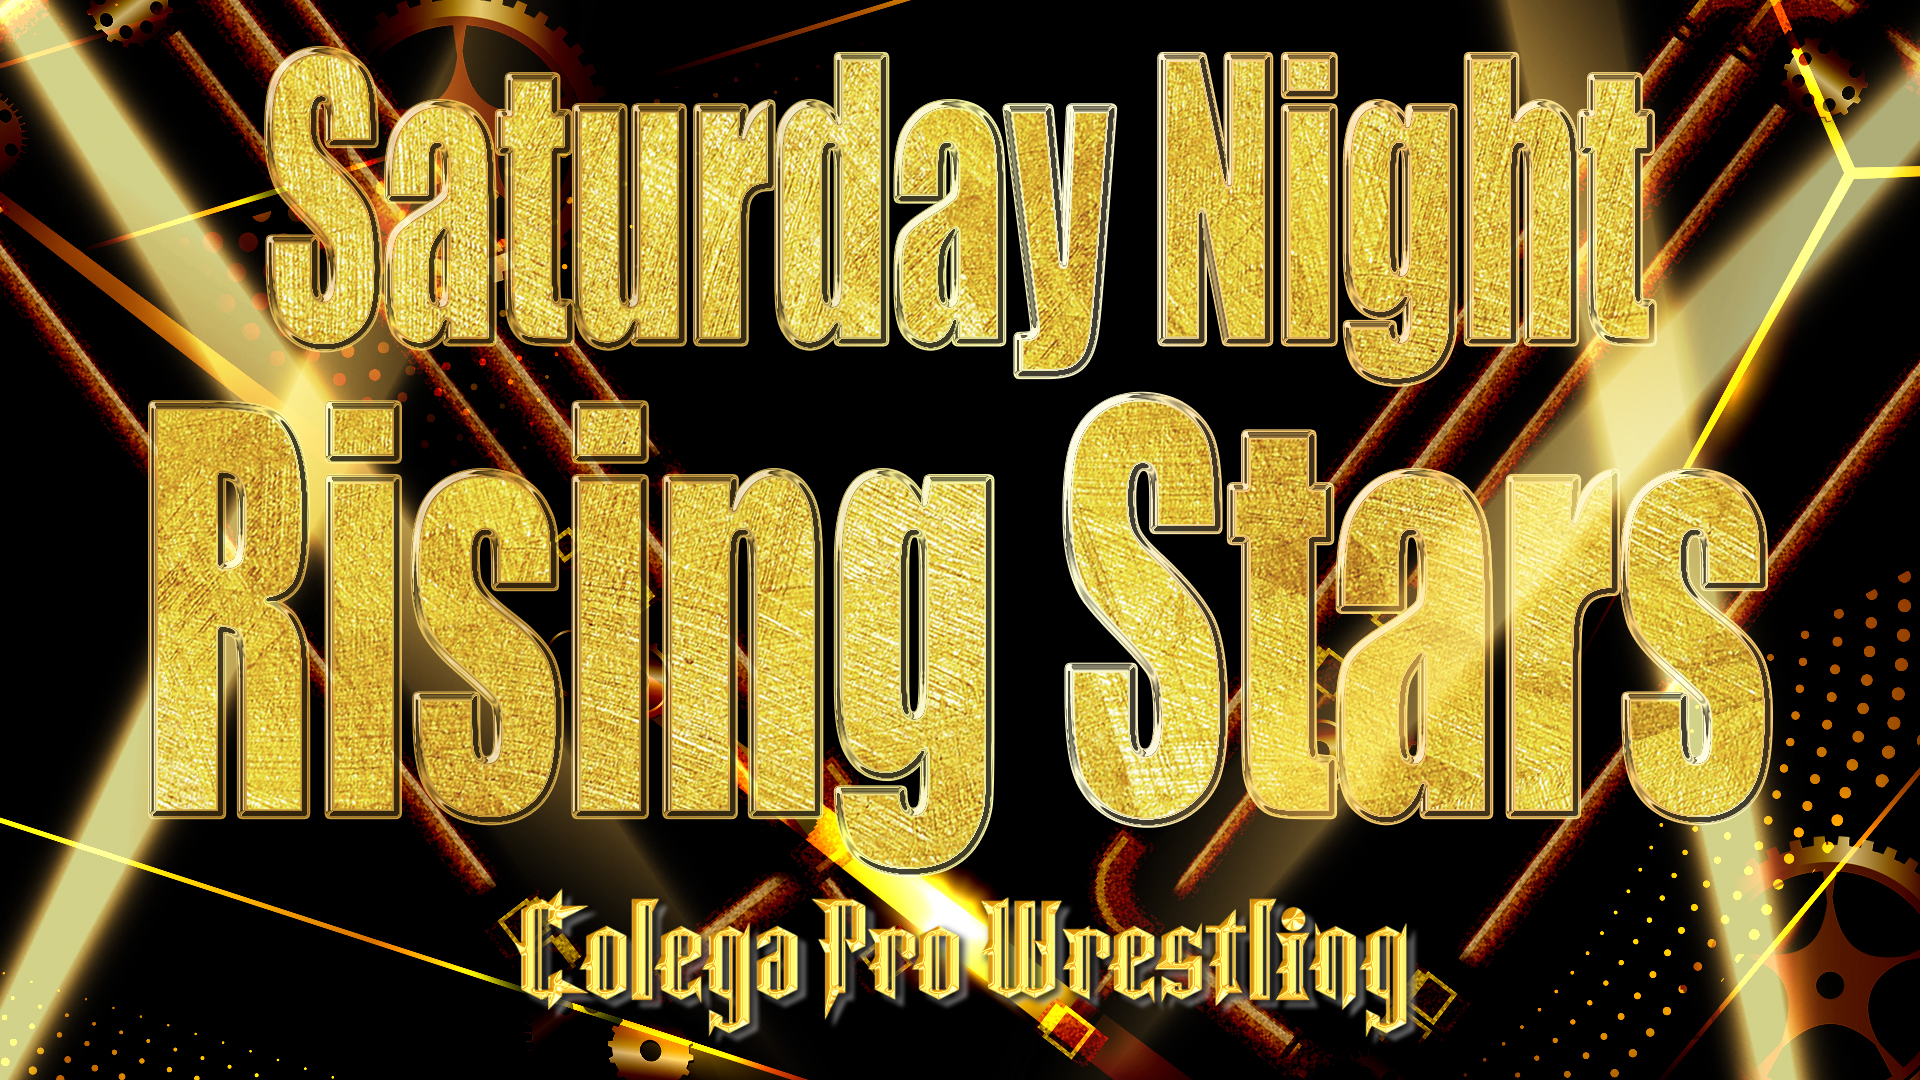 Colega Pro Wrestling コレガプロレスリング チケットスケジュール コレガプロレスリング サタデーナイトライジングスターズ 21 01 23 グランドオープン